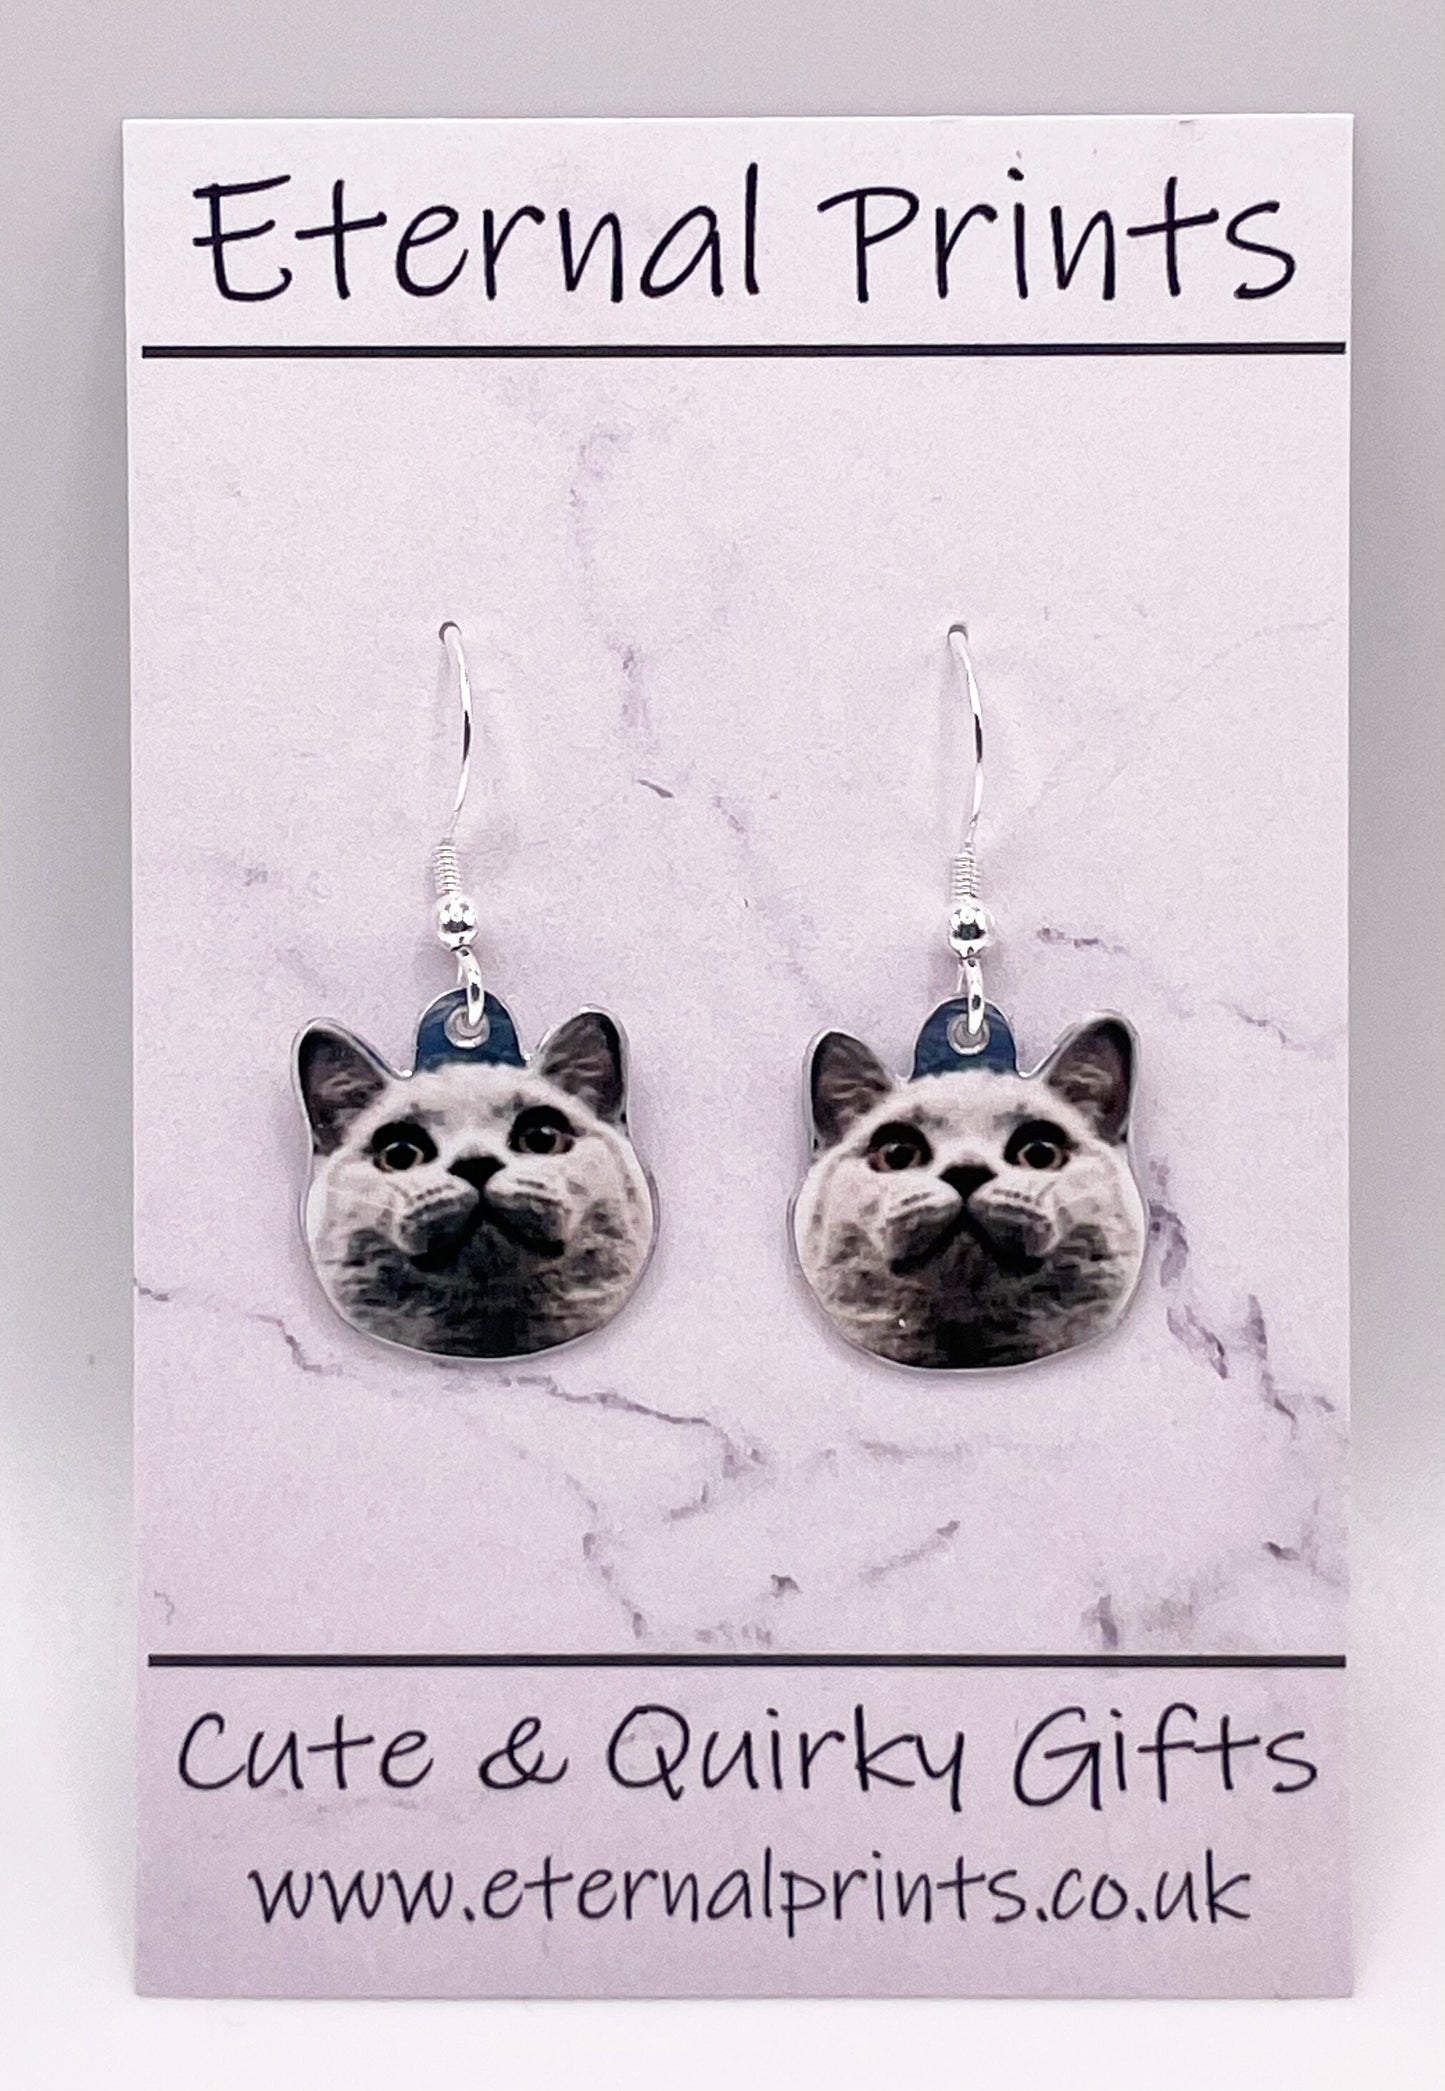 Cat Drop Earrings - Custom Cat Drop Earrings - Dangly Cat Earrings - Custom Pet Dangly Earrings - Dangly Cats - Cat Lover Earrings